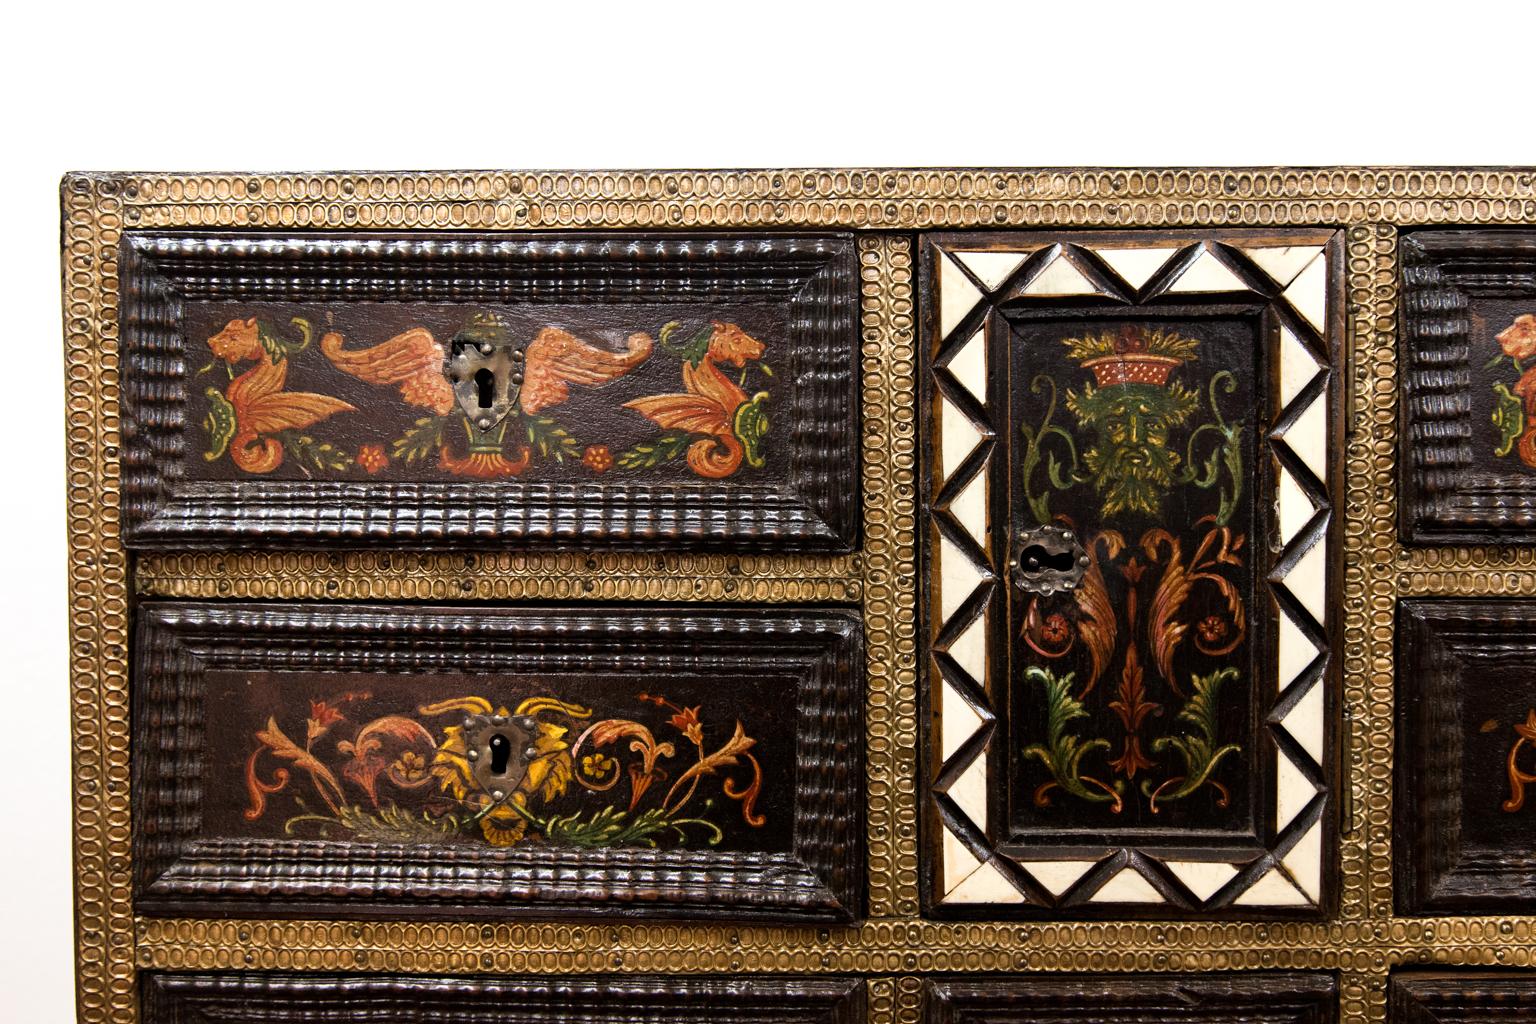 Bemalter und eingelegter italienischer Schrank auf Ständer, mit Buchsbaum-, Nussbaum- und Knocheneinlegearbeiten, die Oberseite mit geometrischem Muster eingelegt, die bemalten Schubladen mit geprägtem Messing ummantelt, die mittlere Tür offenbart